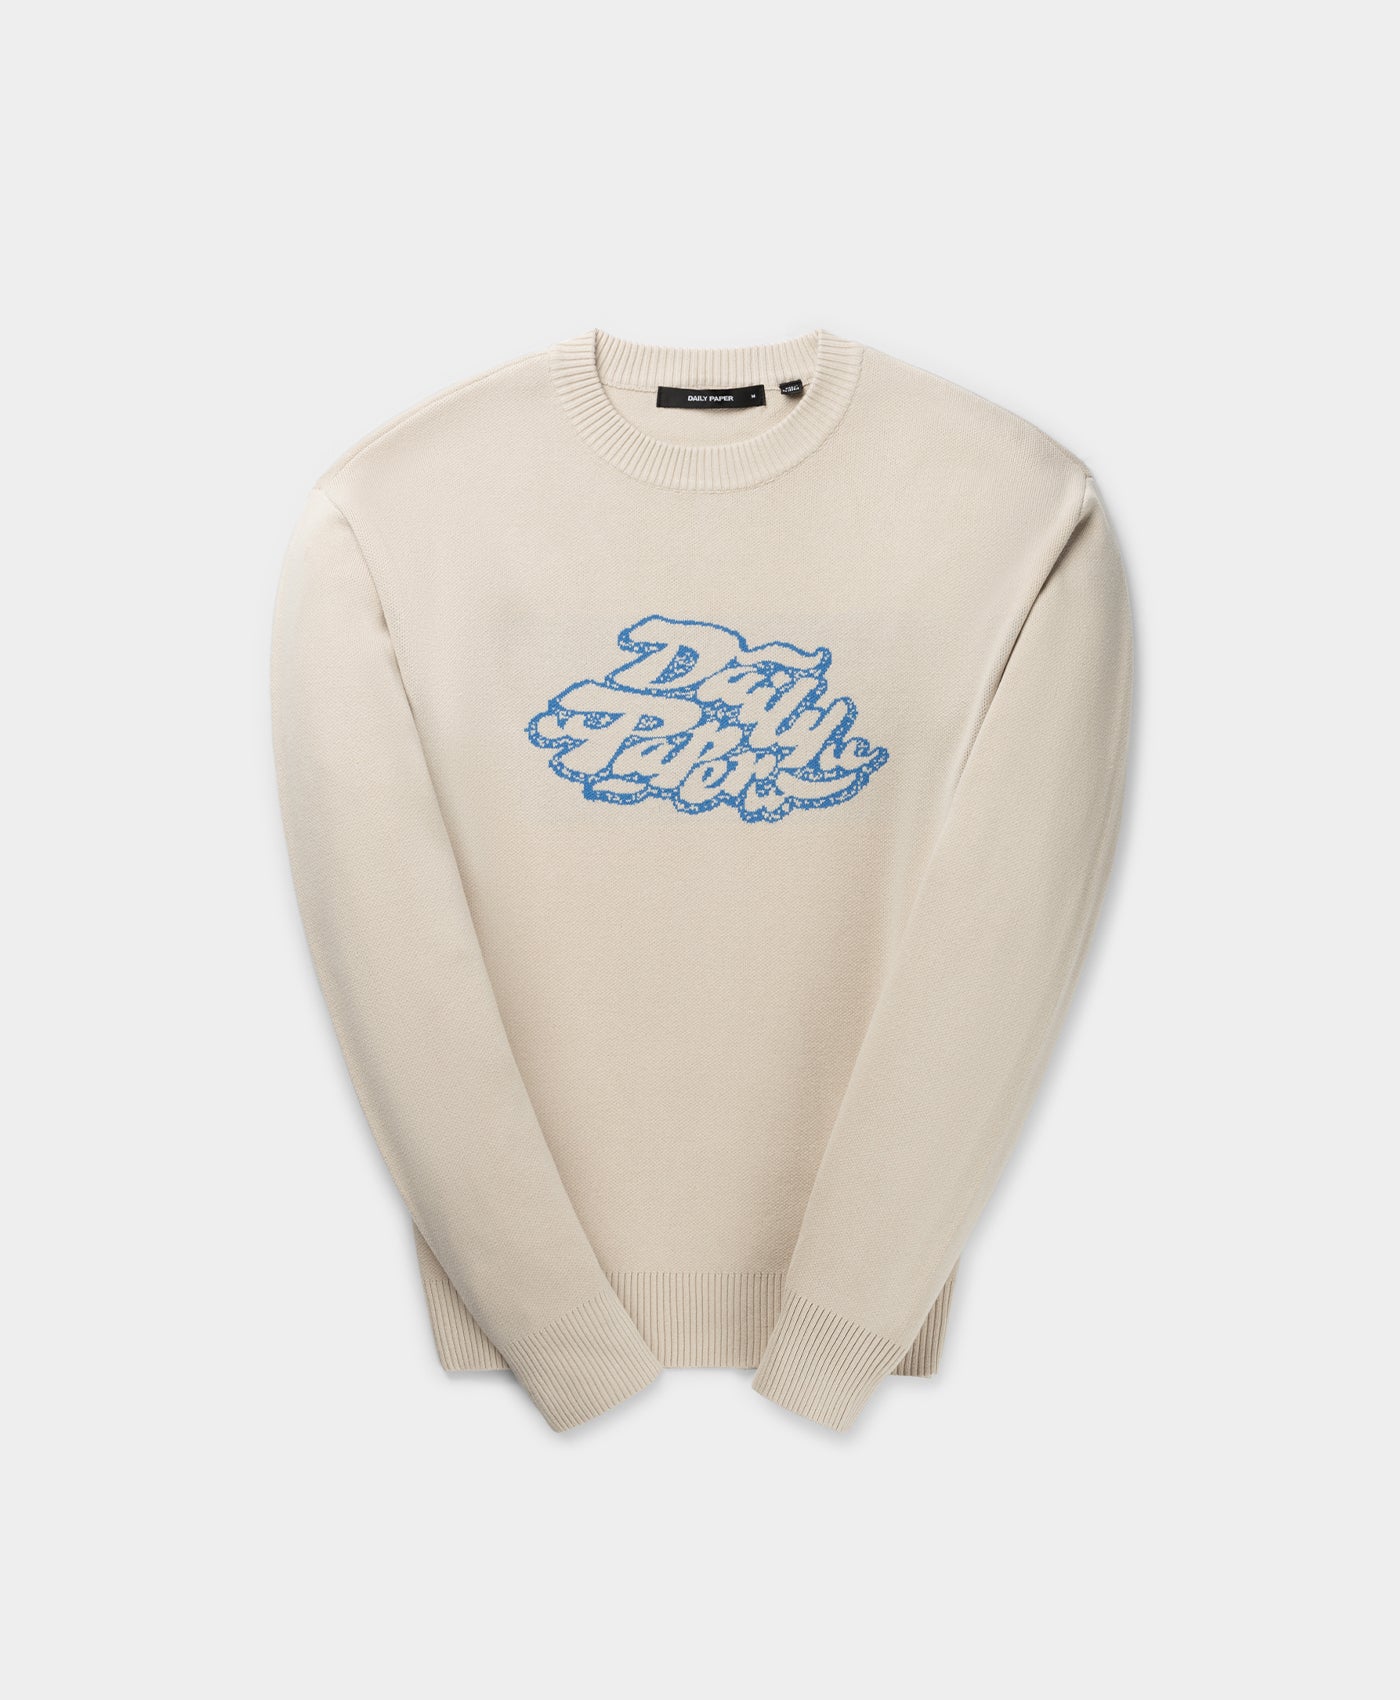 DP - White Sand Pelaz Sweater - Packshot - Front